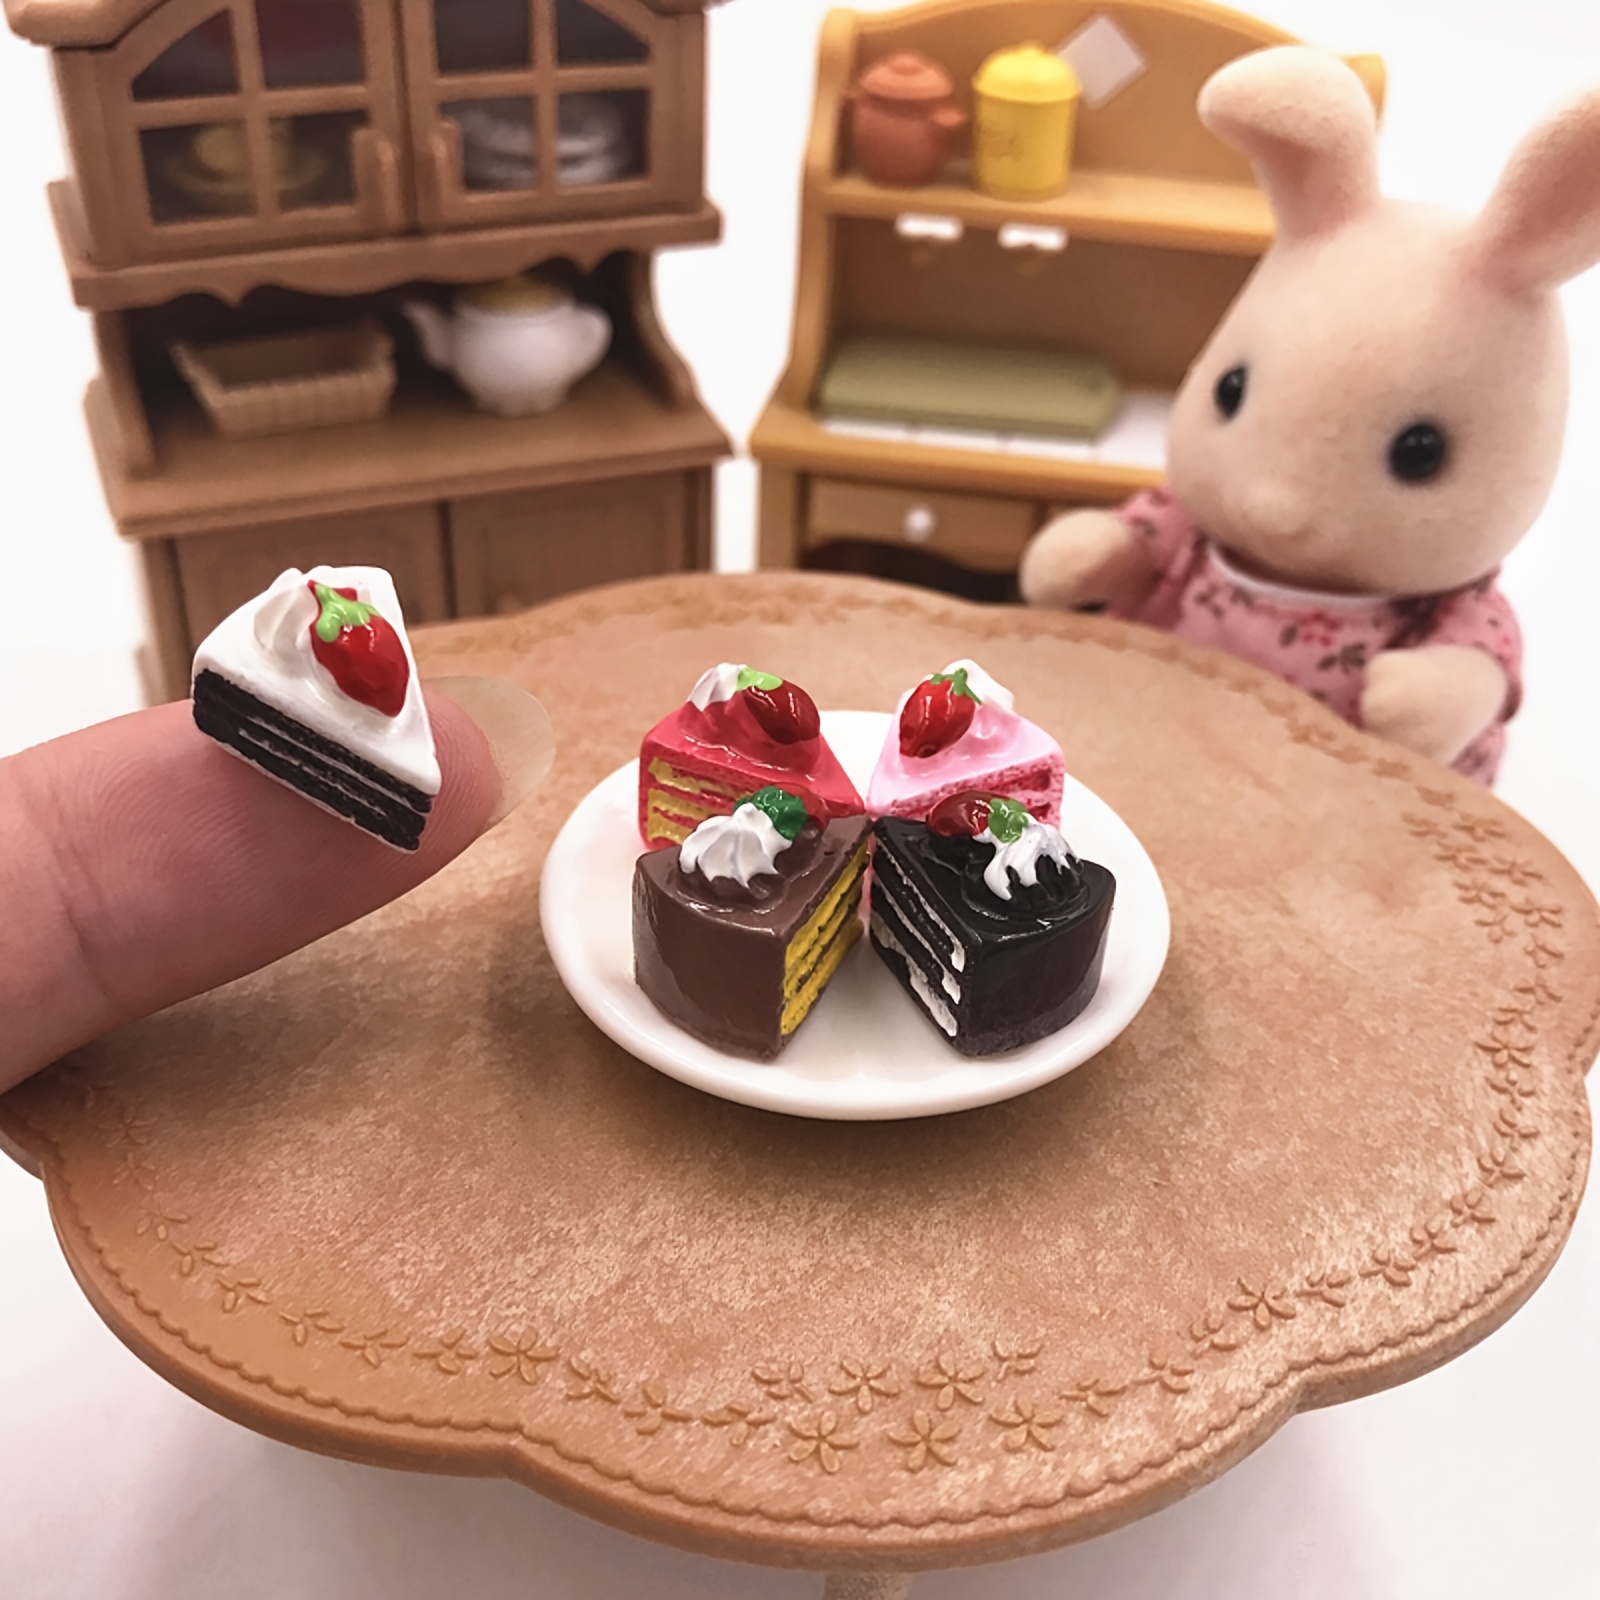 Mini Cakes Miniature Food Models Dollhouse Accessories Doll - Temu